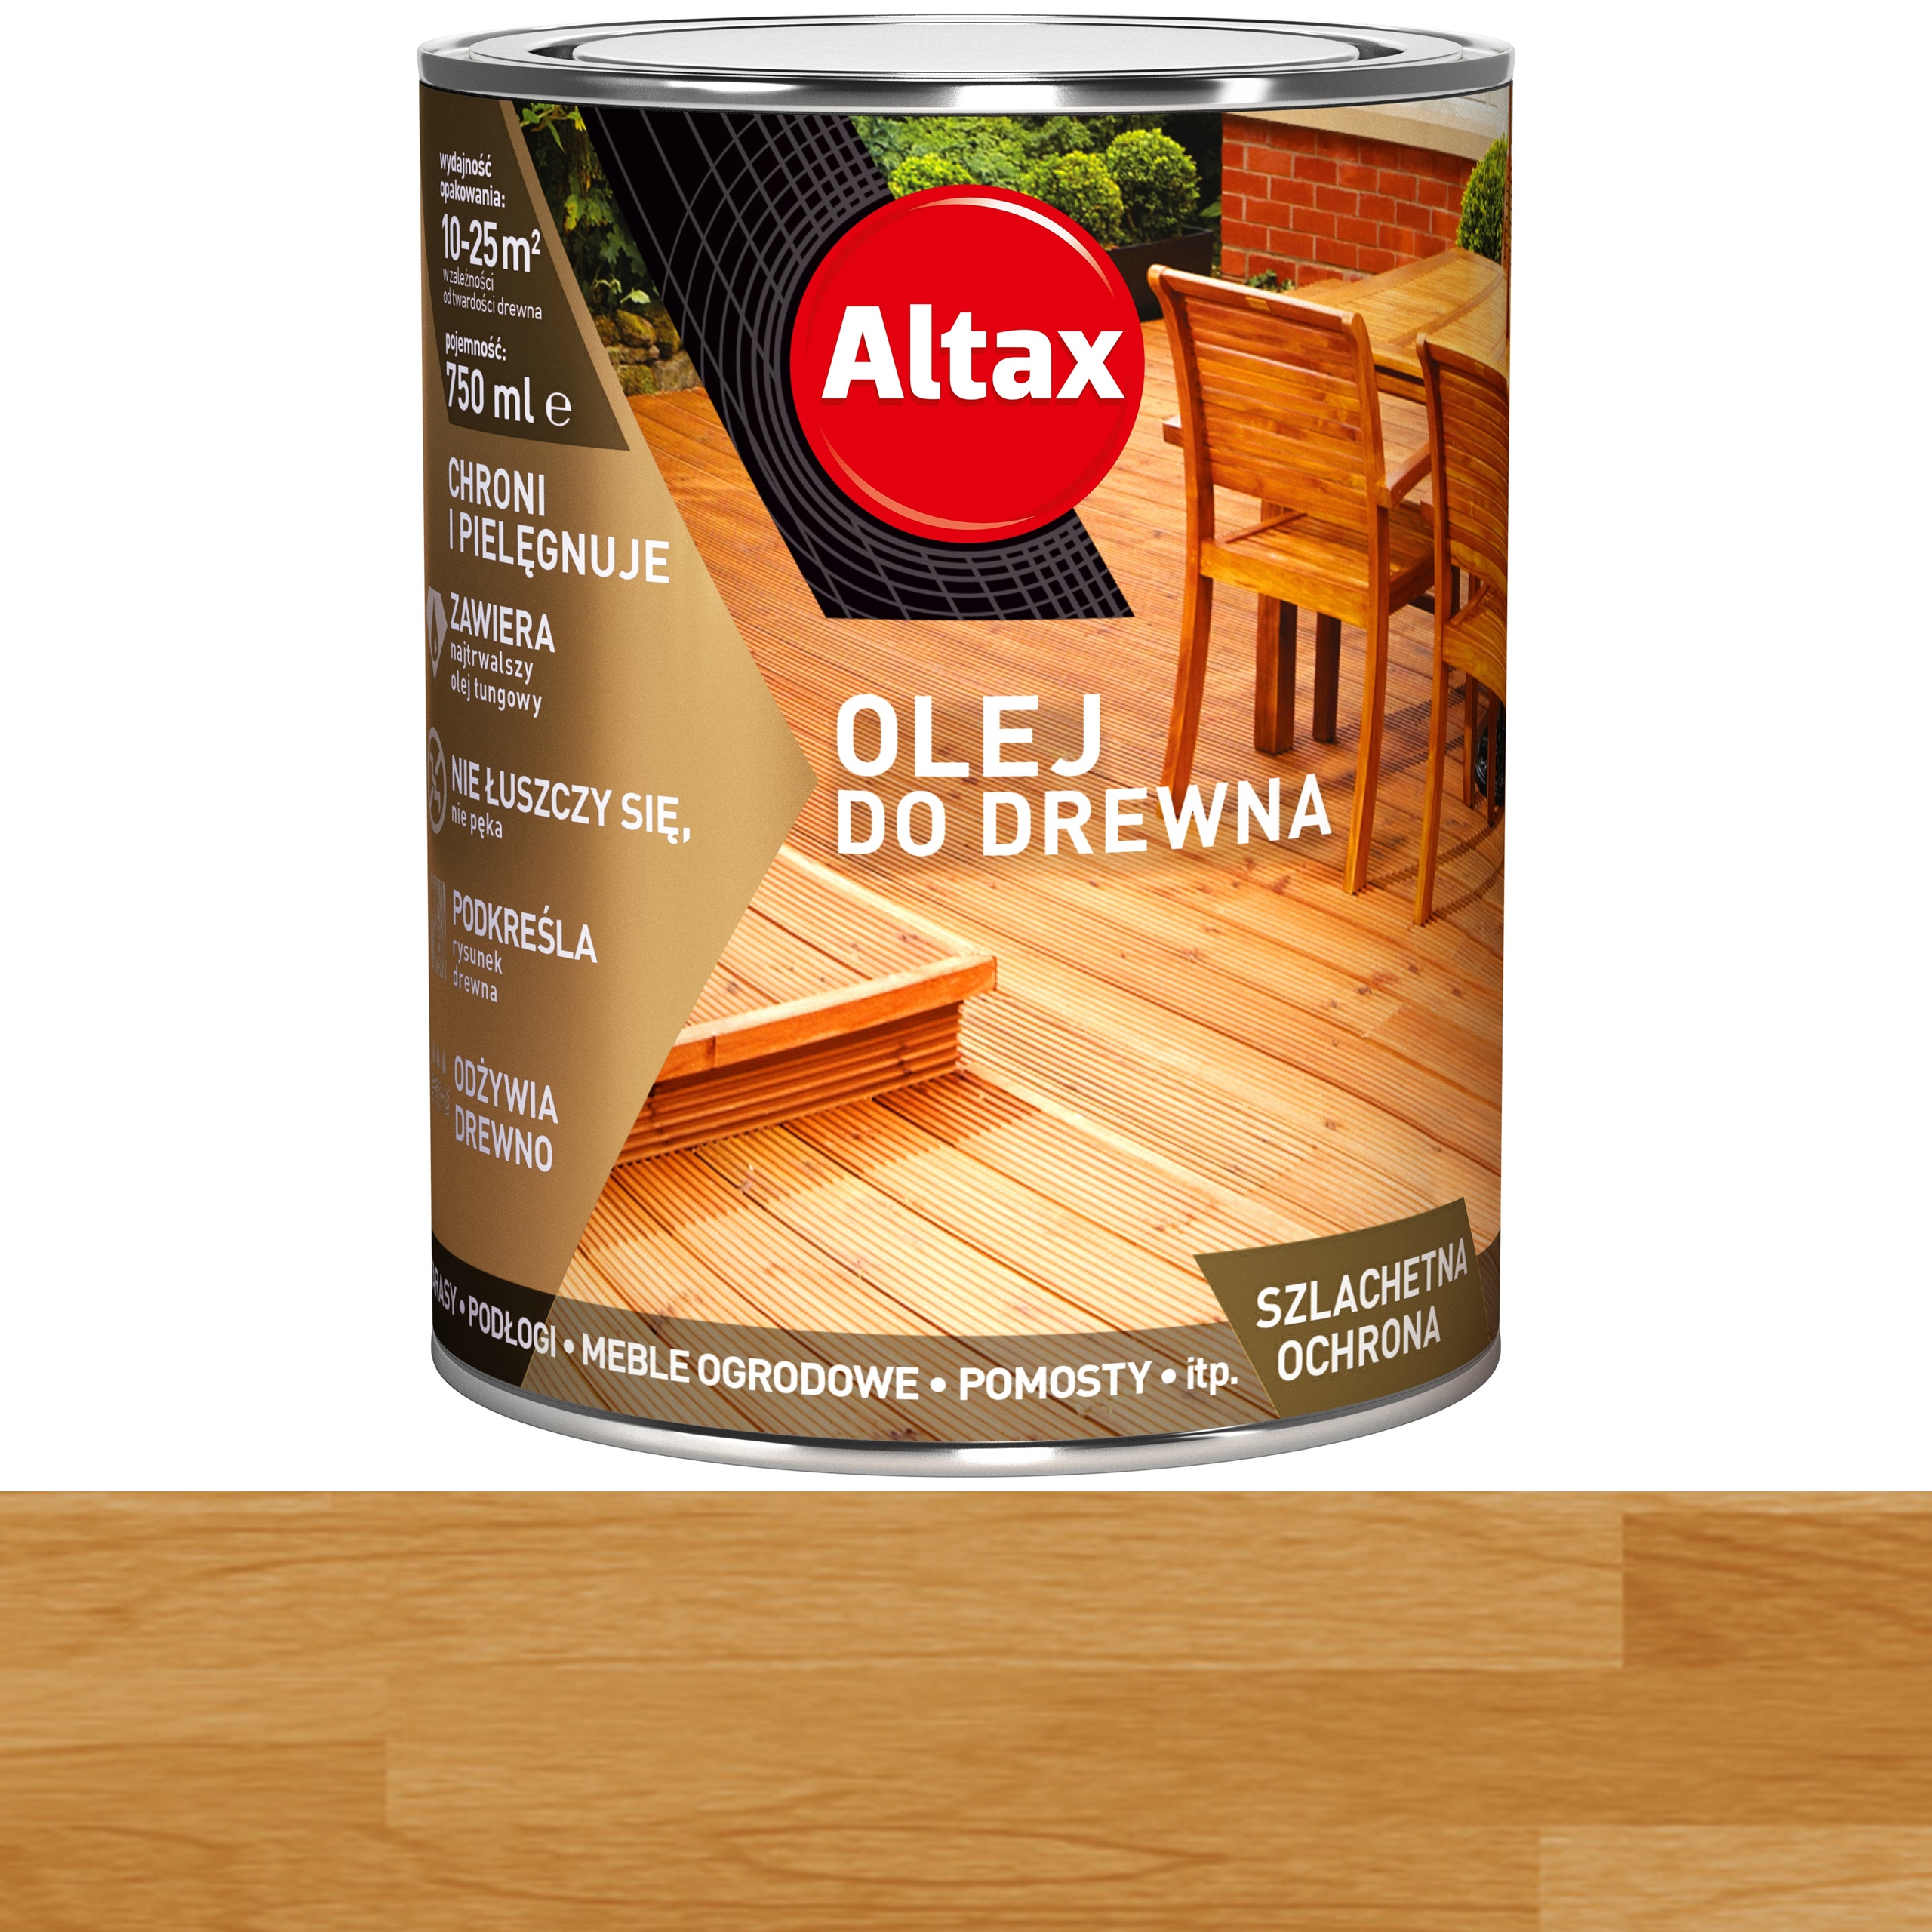 Altax масло для дерева